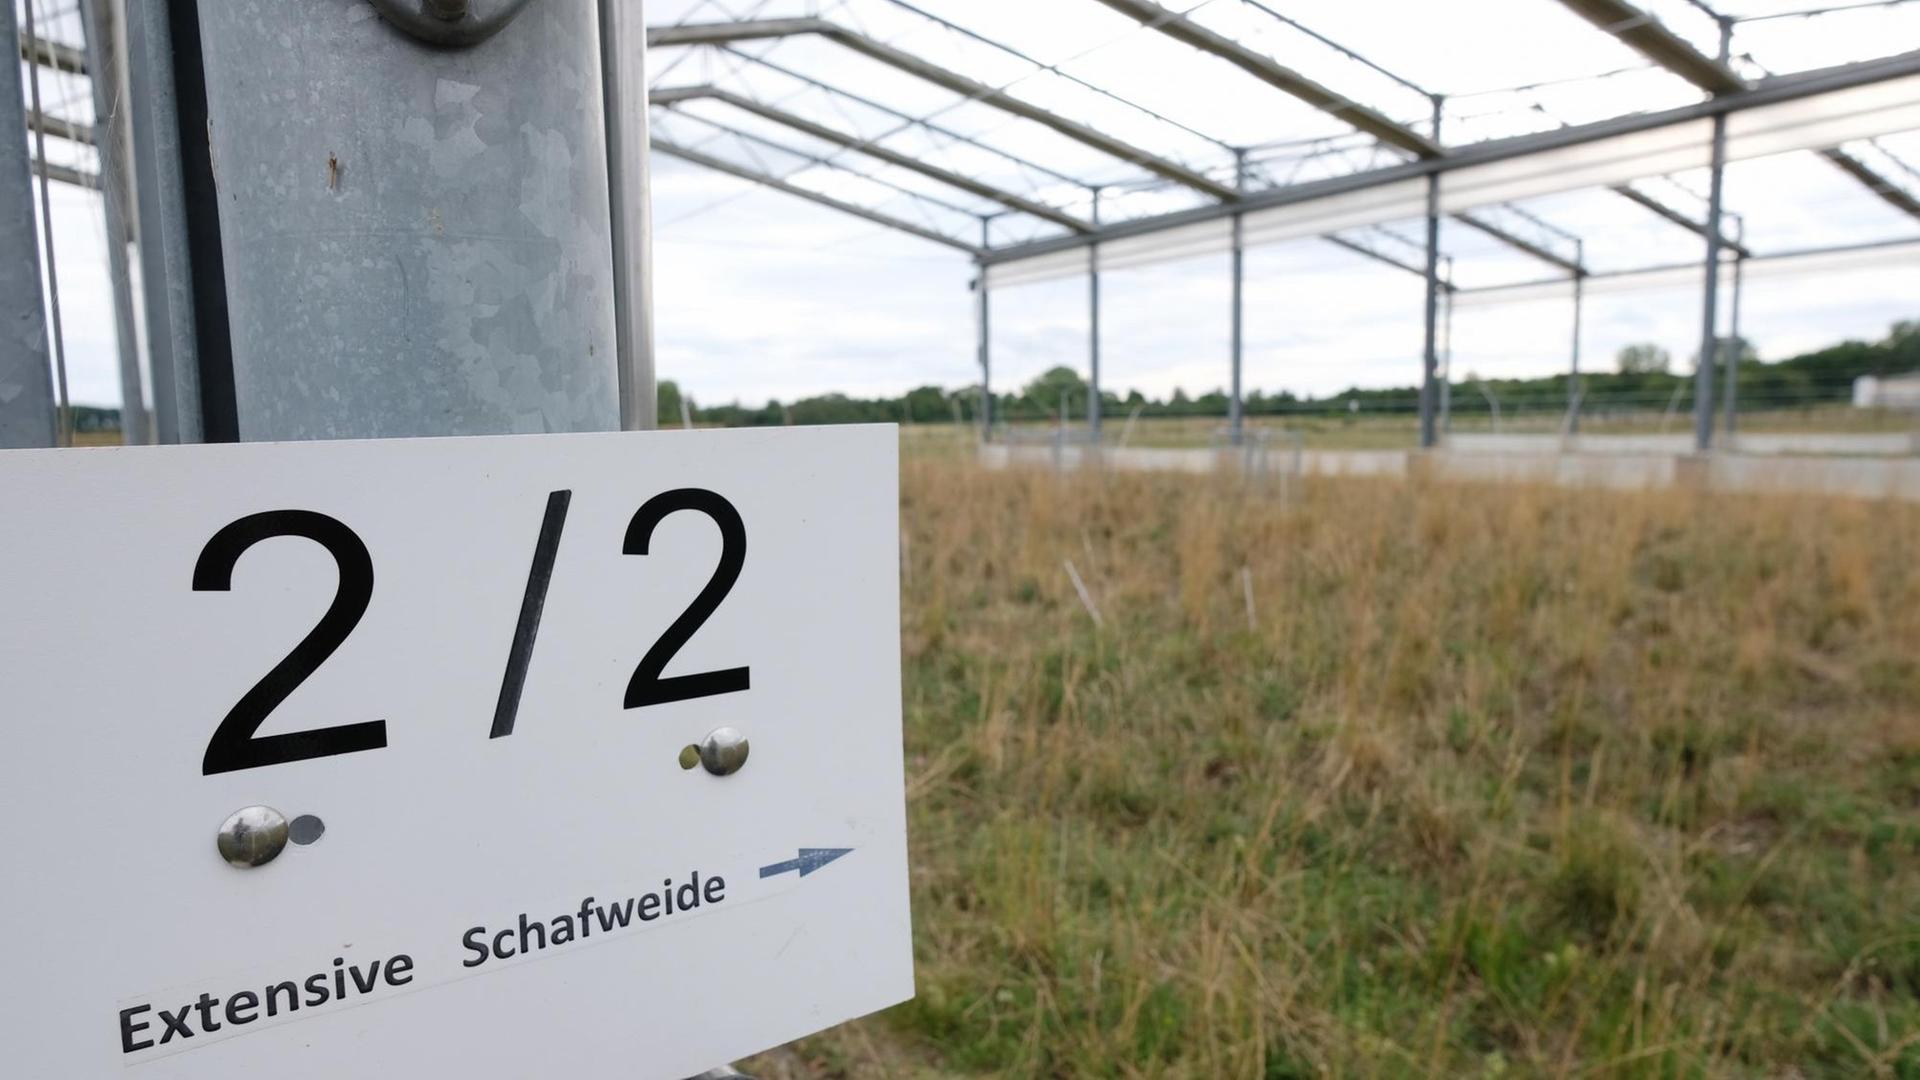 Ackerflächen in der Klimaversuchsanlage des Helmholtz-Zentrums für Umweltforschung in Bad Lauchstädt. Dort werden verschiedene Anbauflächen zur Forschung beobachtet.